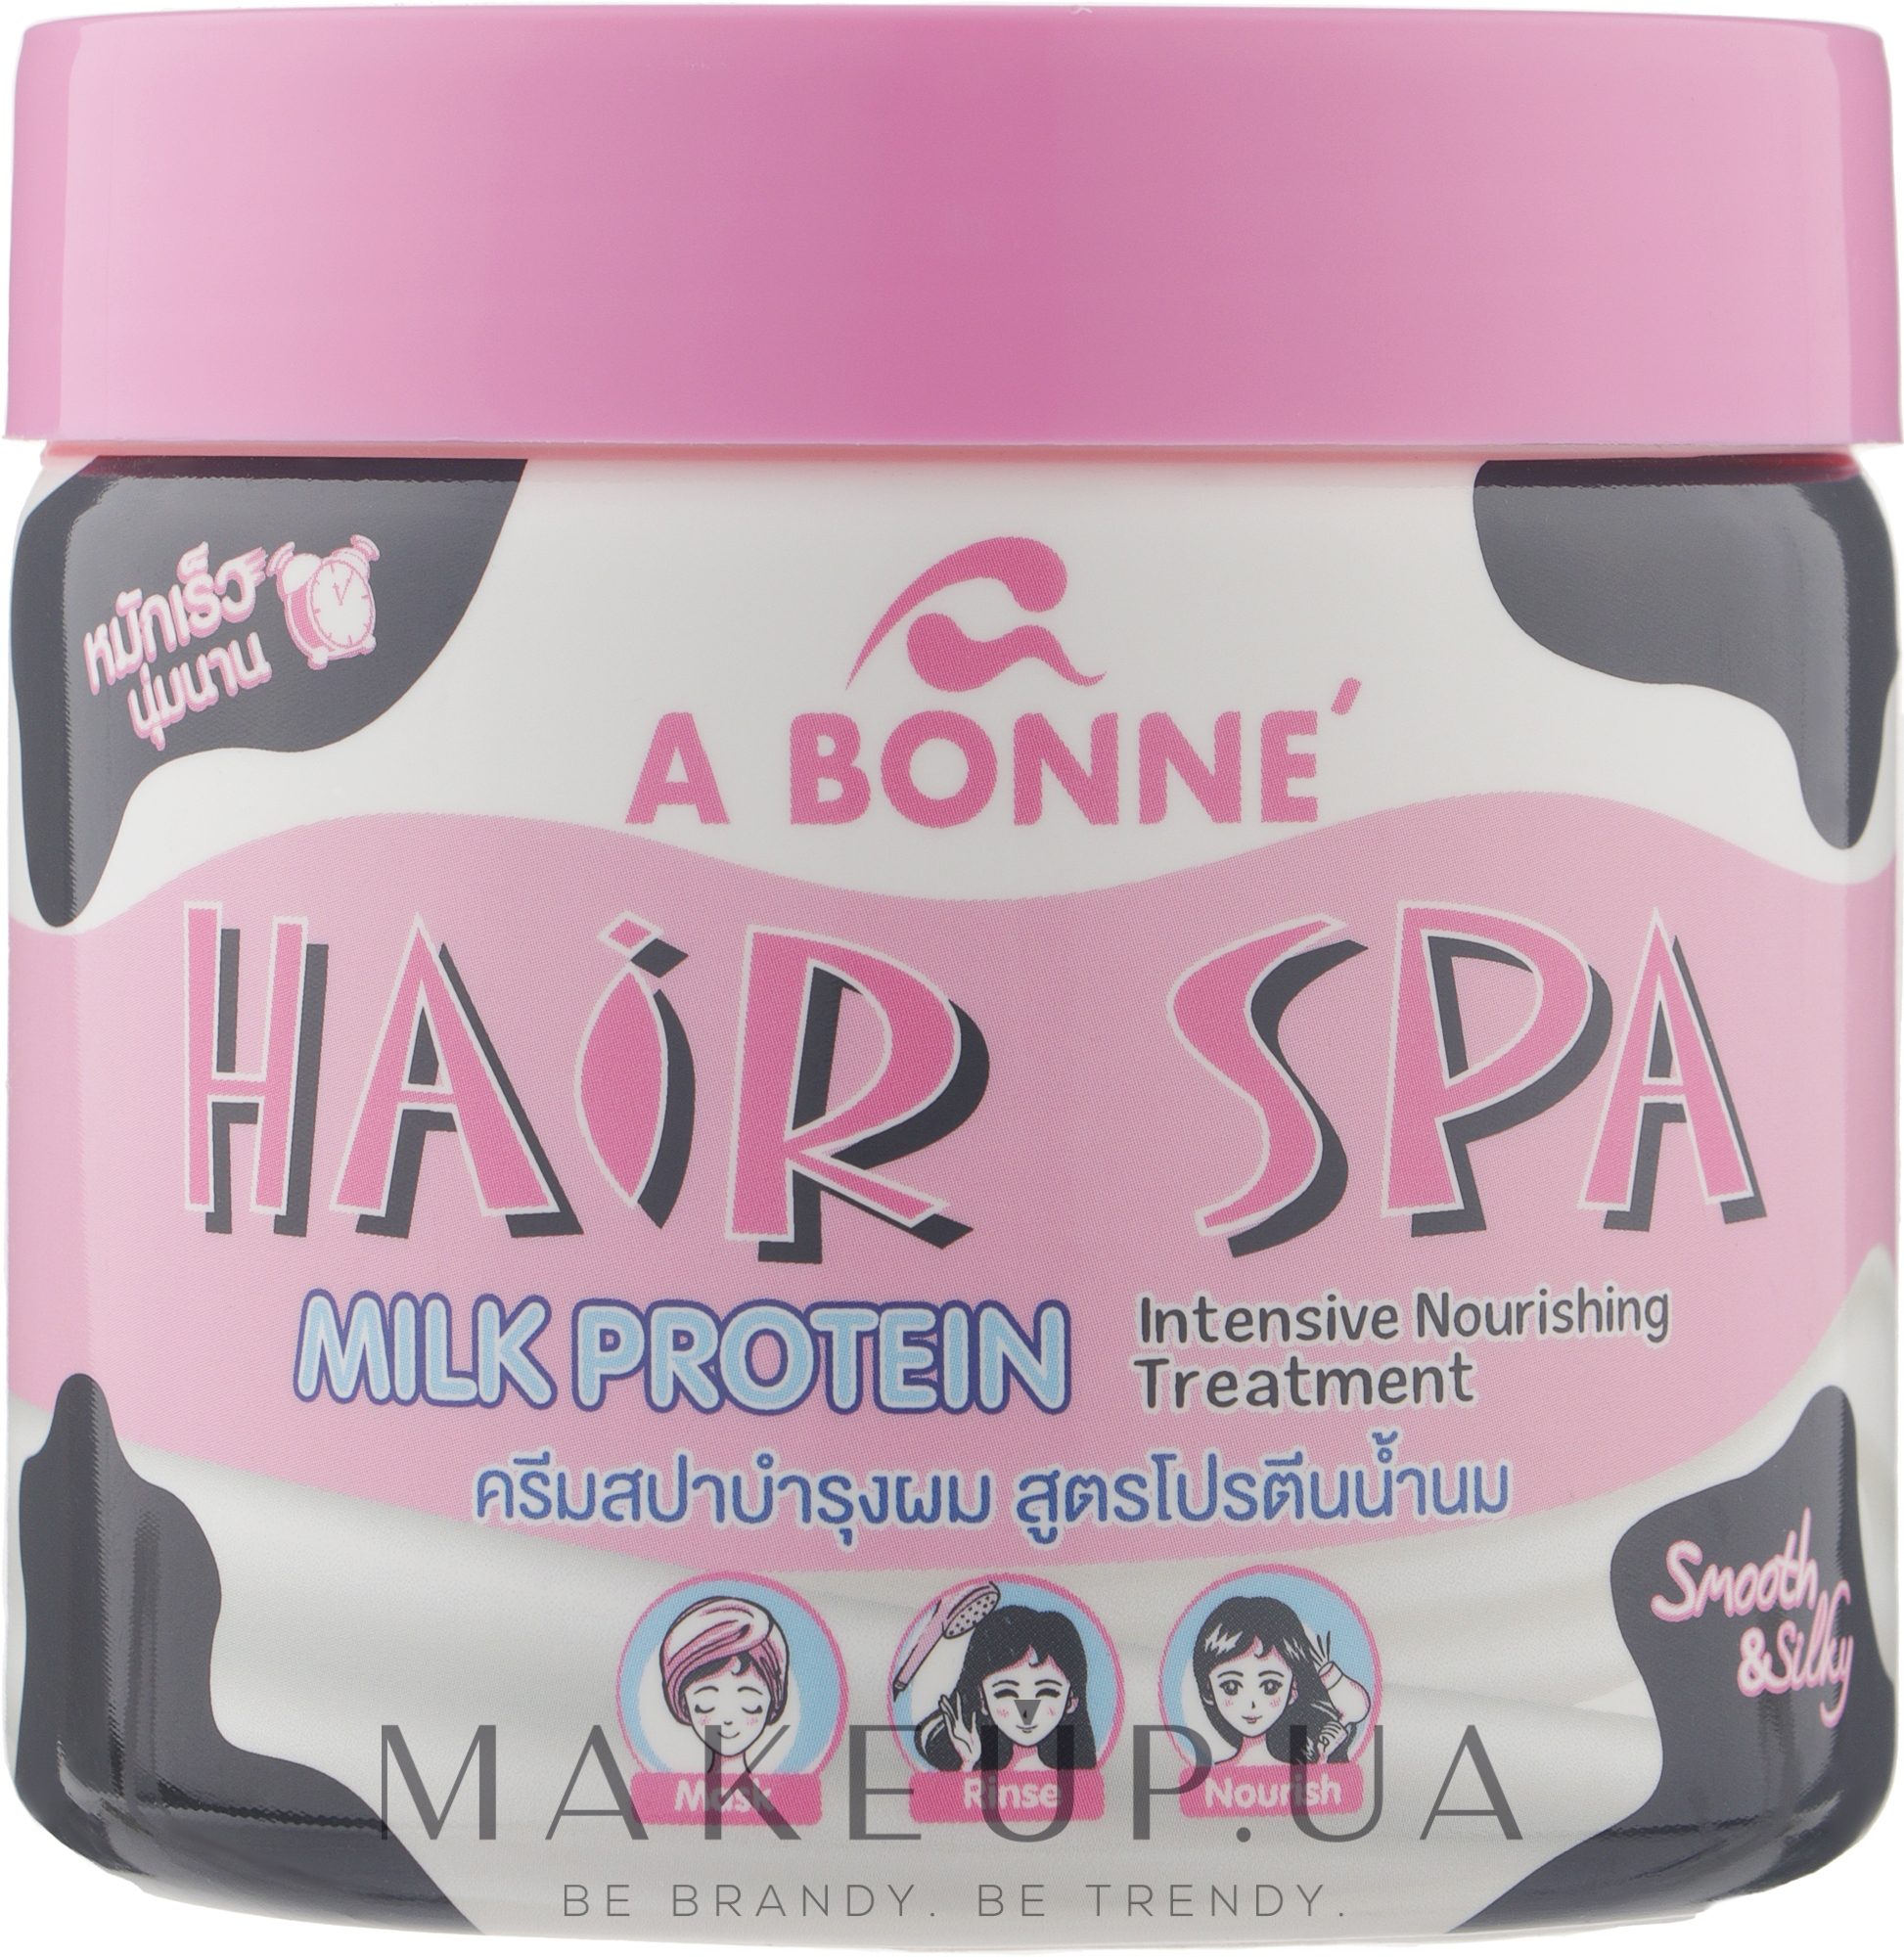 Інтенсивний живильний догляд за волоссям з молочними протеїнами - A Bonne Hair Spa Treatment Intensive Milk Protein — фото 500g